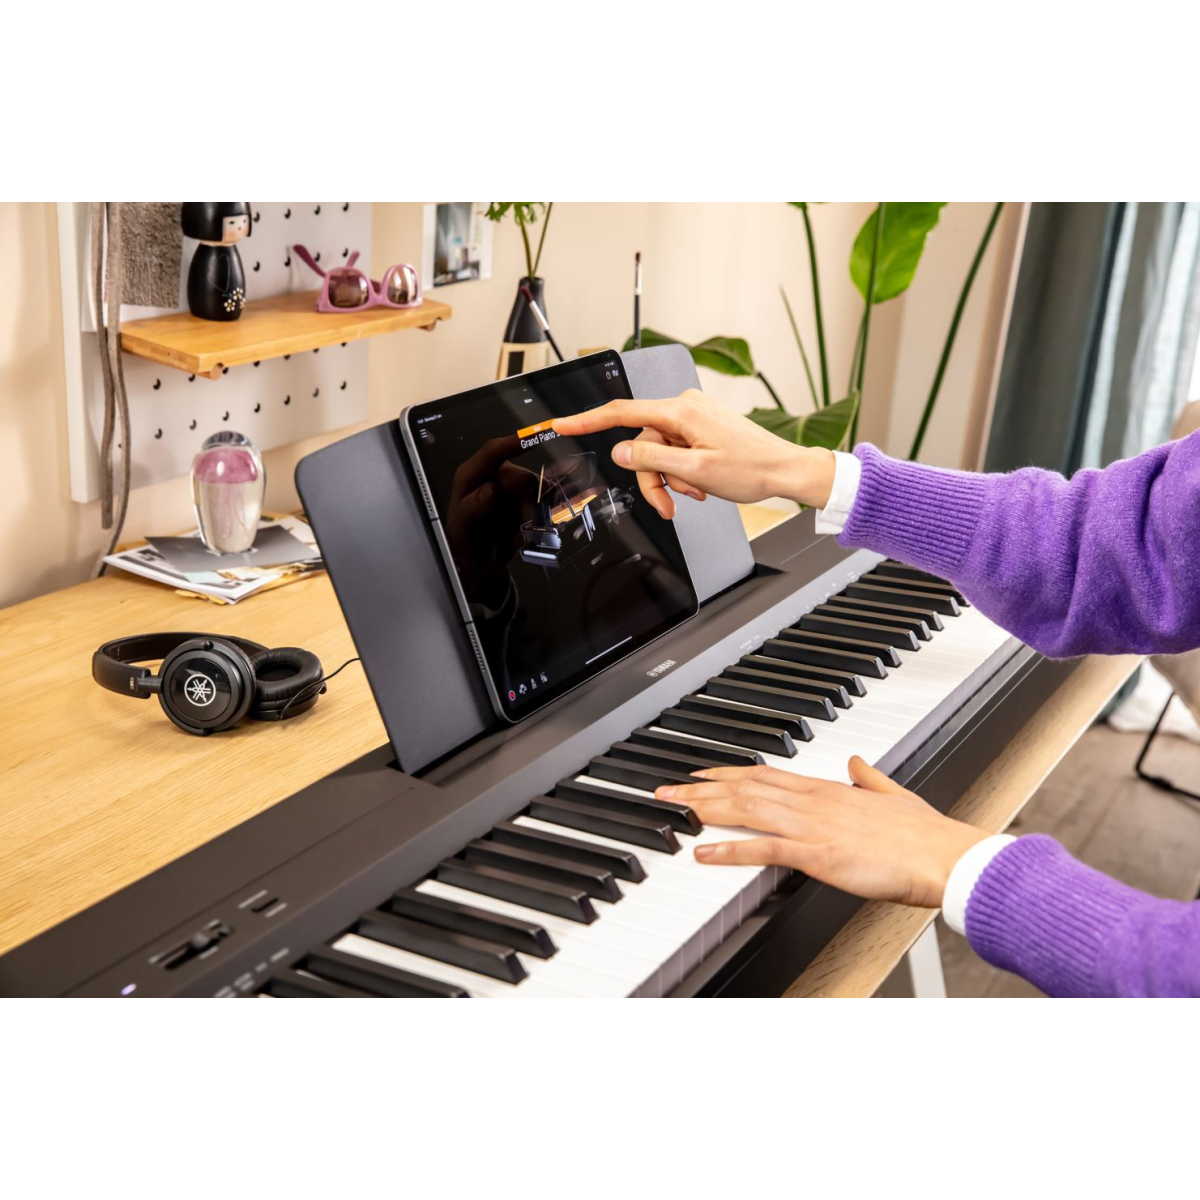 P-525 (BLANC) - Pianos numériques portables - Energyson